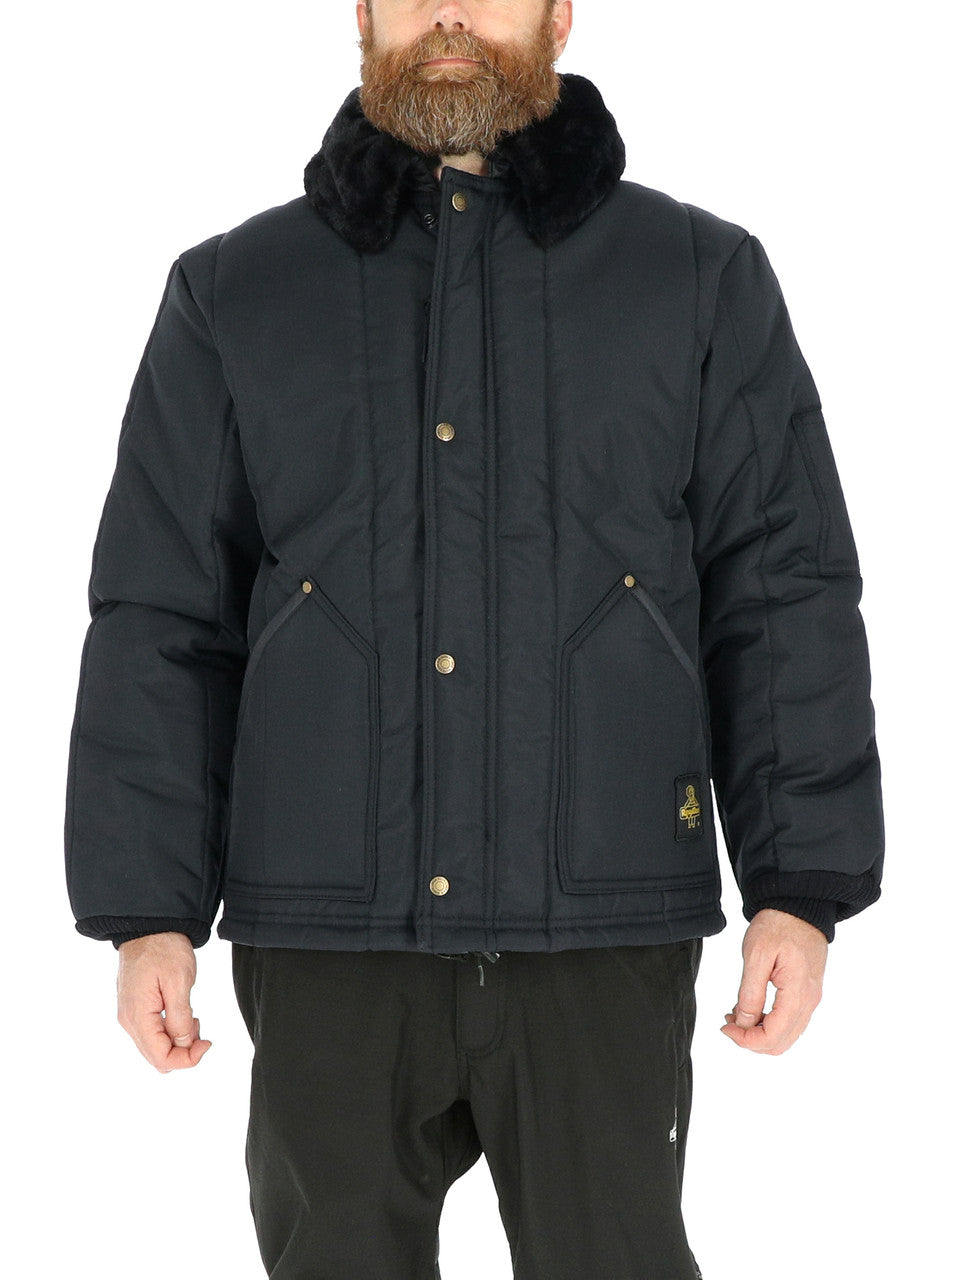 Refrigiwear Iron-Tuff® Arctic Jacket